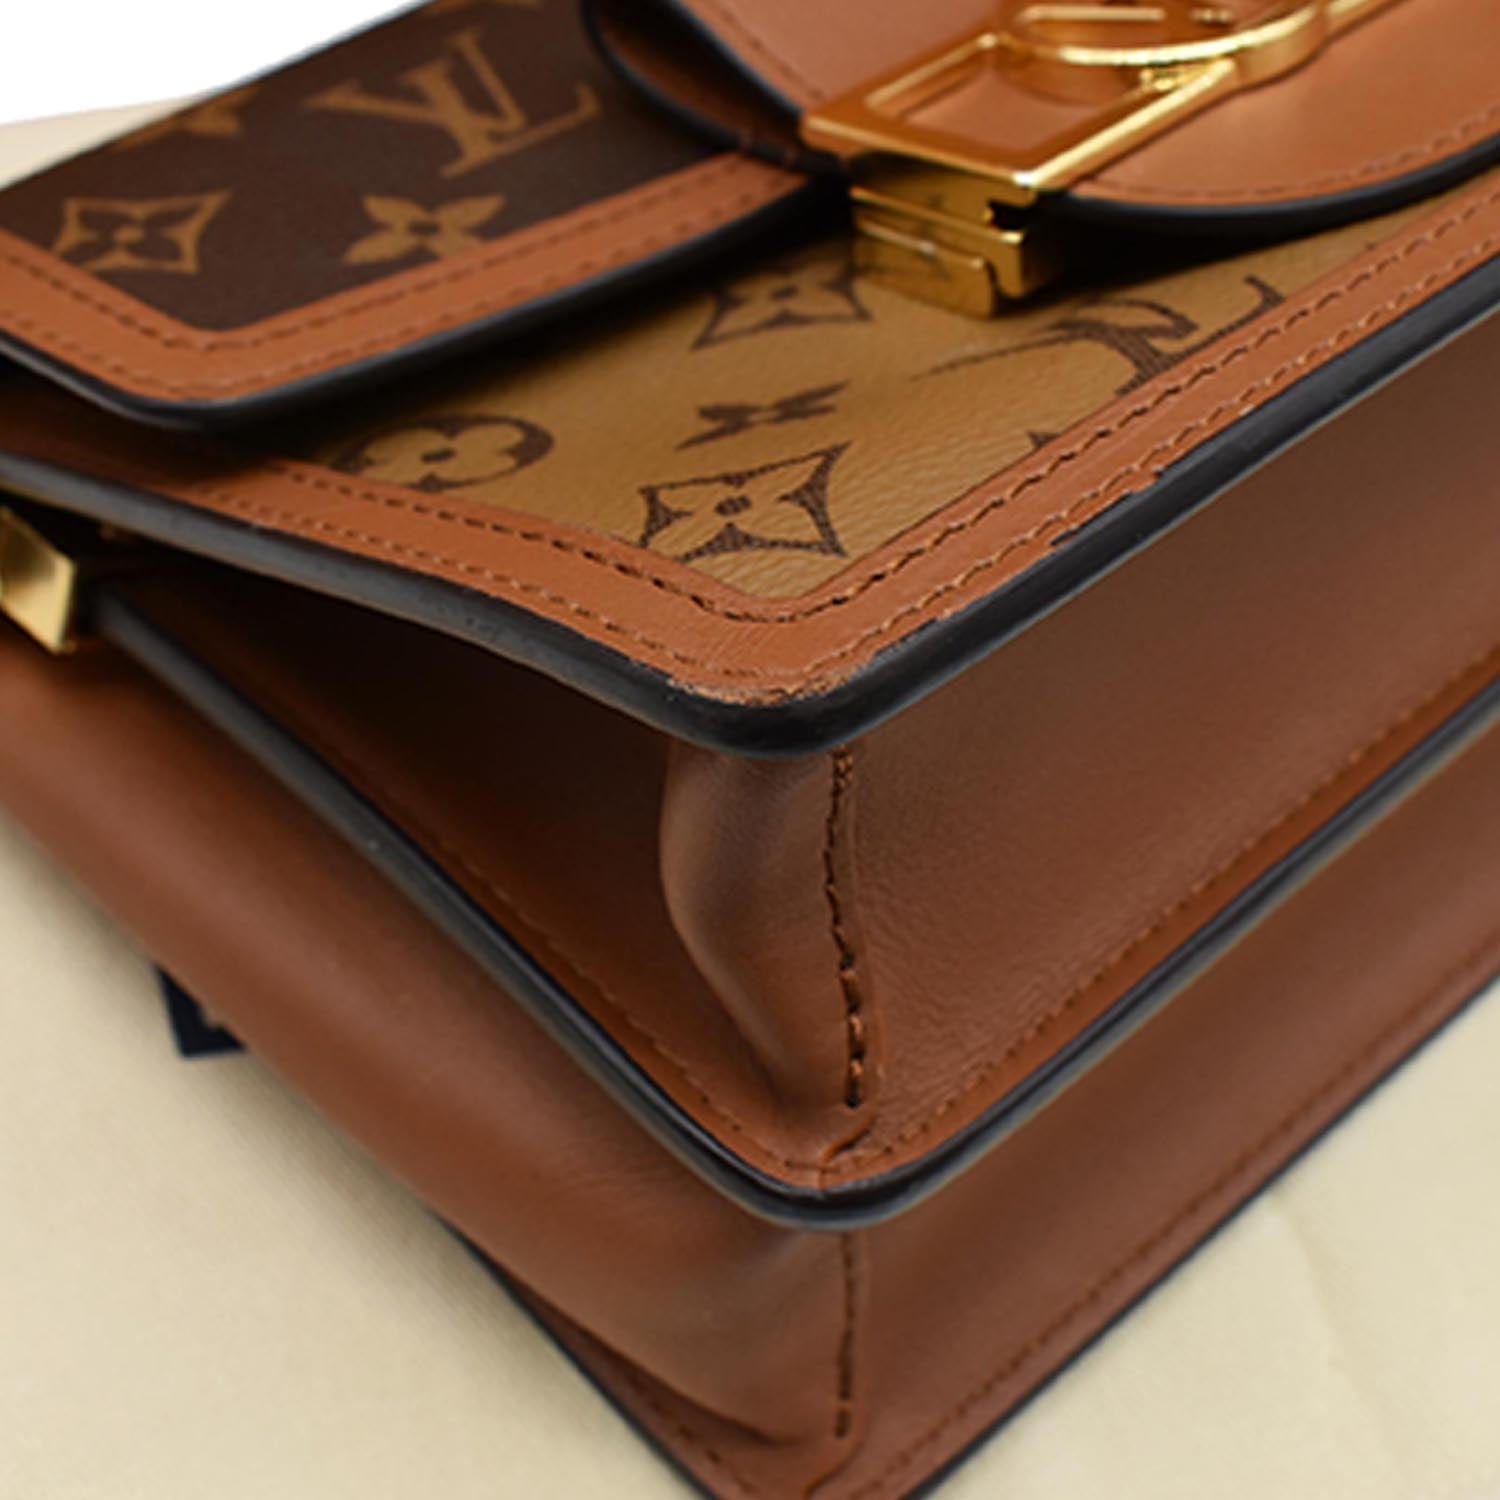 Louis Vuitton Mini e Brown Canvas Shoulder Bag (Pre-Owned)